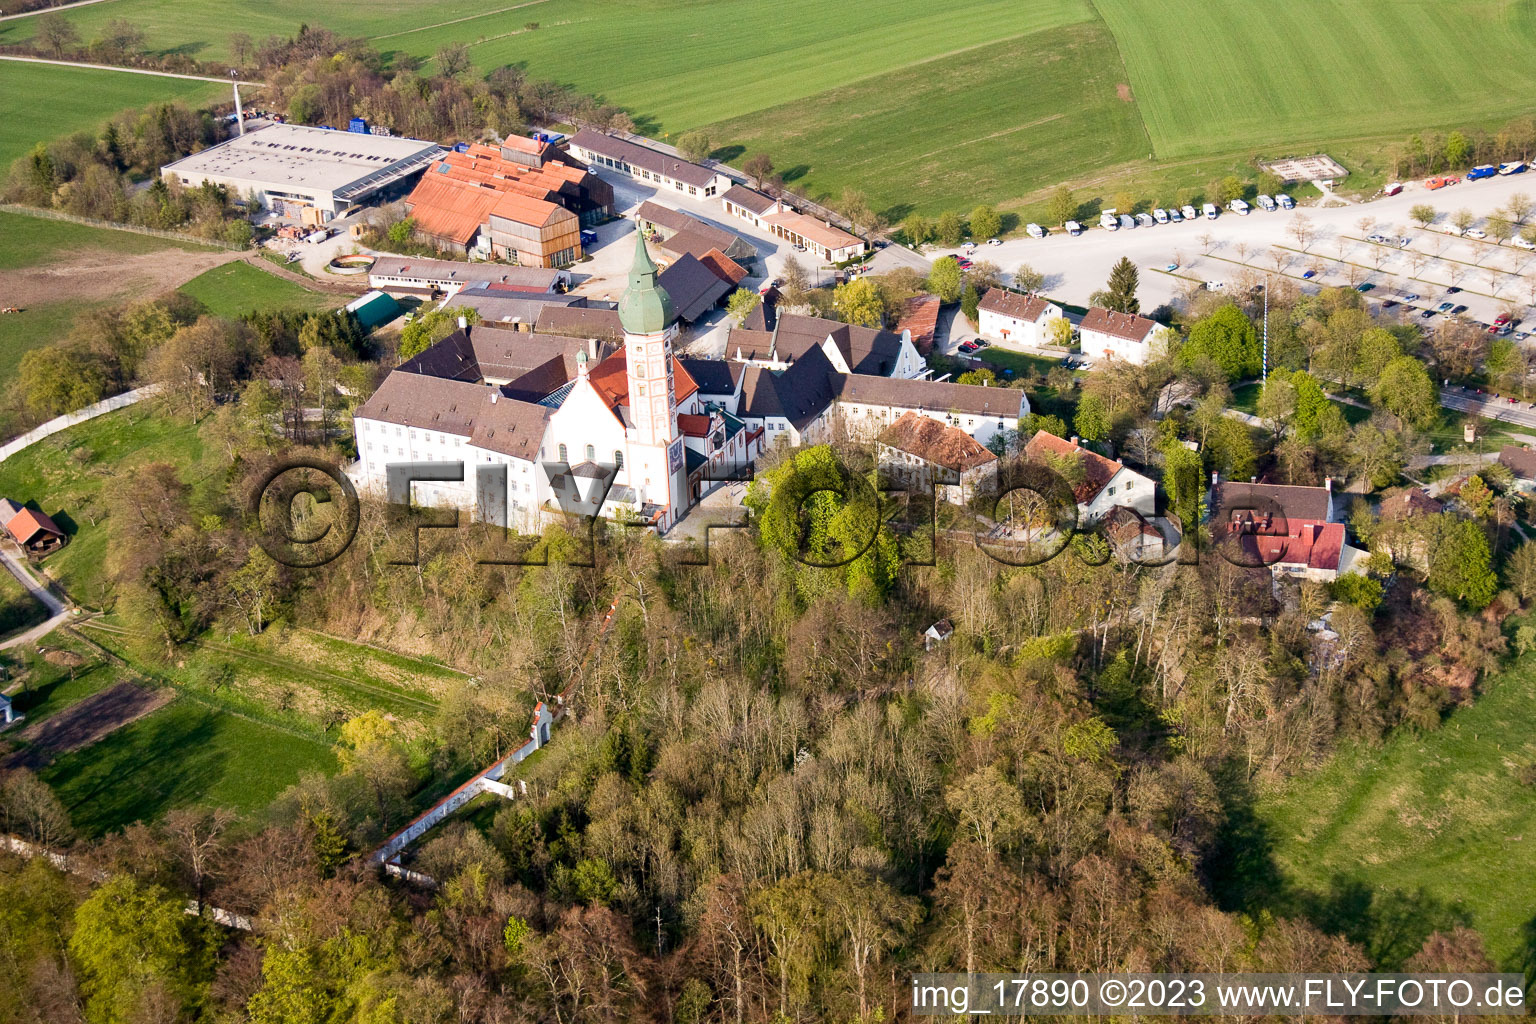 Luftbild von Andechs, Kloster-Brauerei im Bundesland Bayern, Deutschland